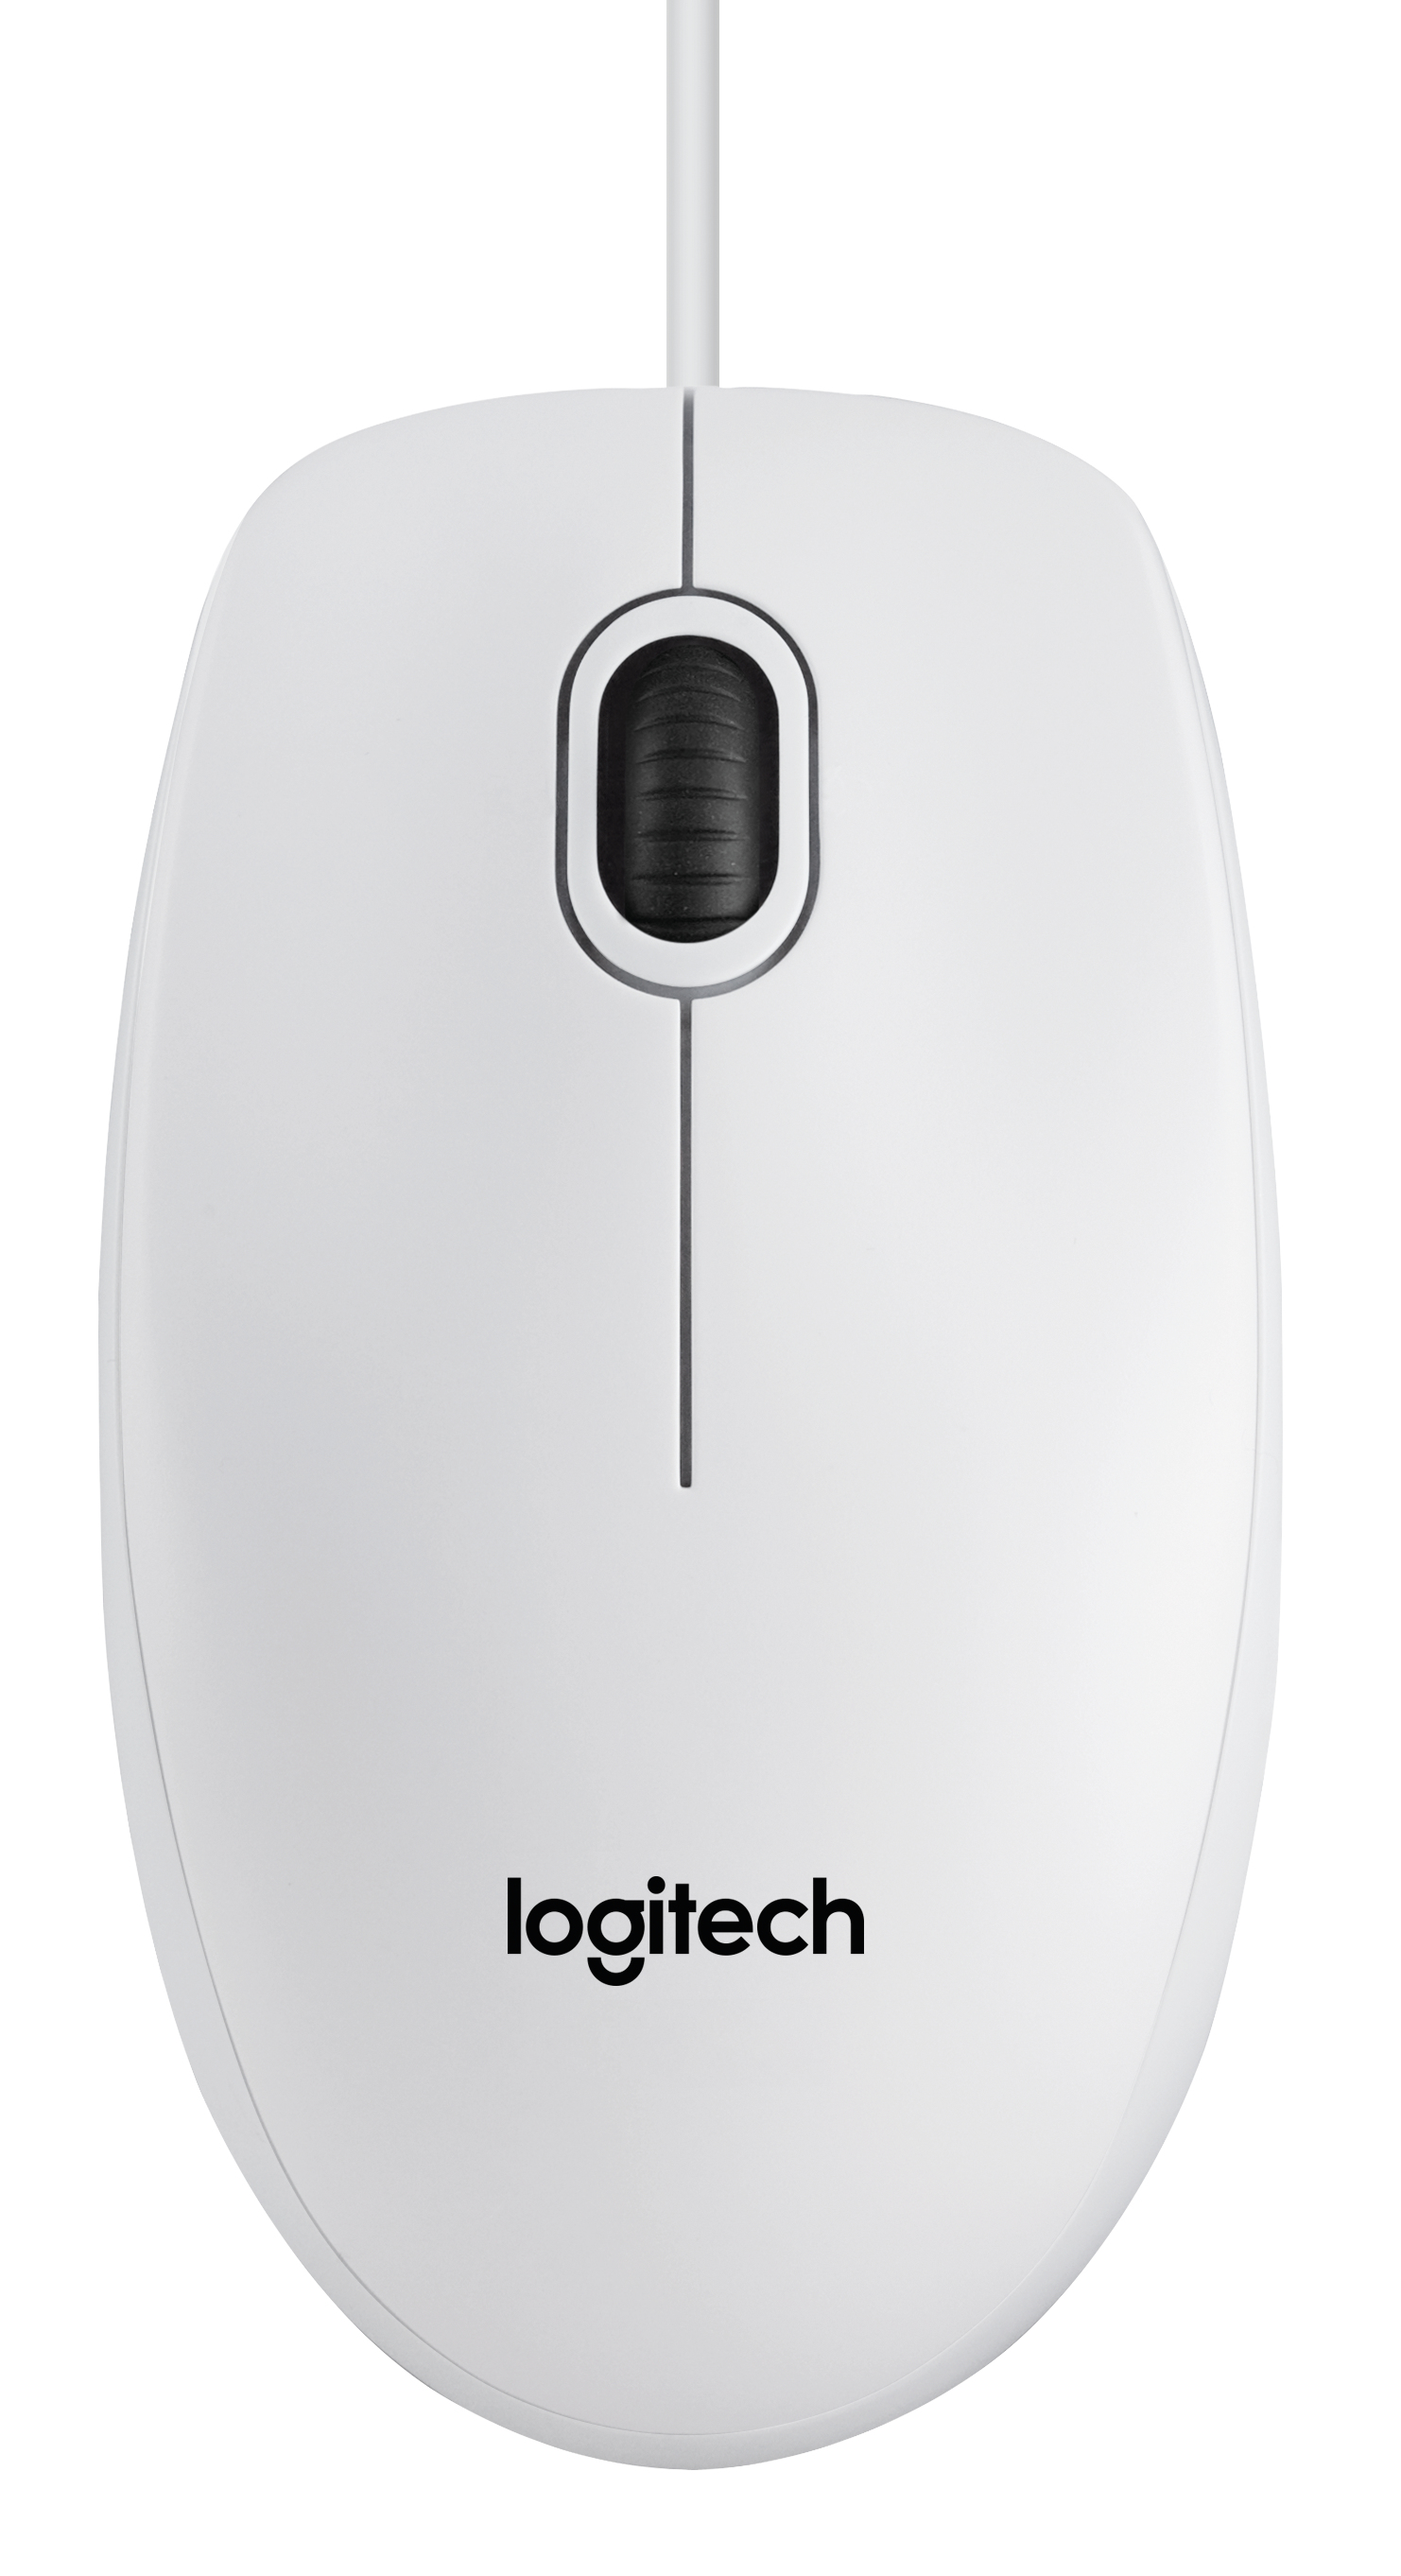 Logitech Maus B100 Optical USB Maus, weiß